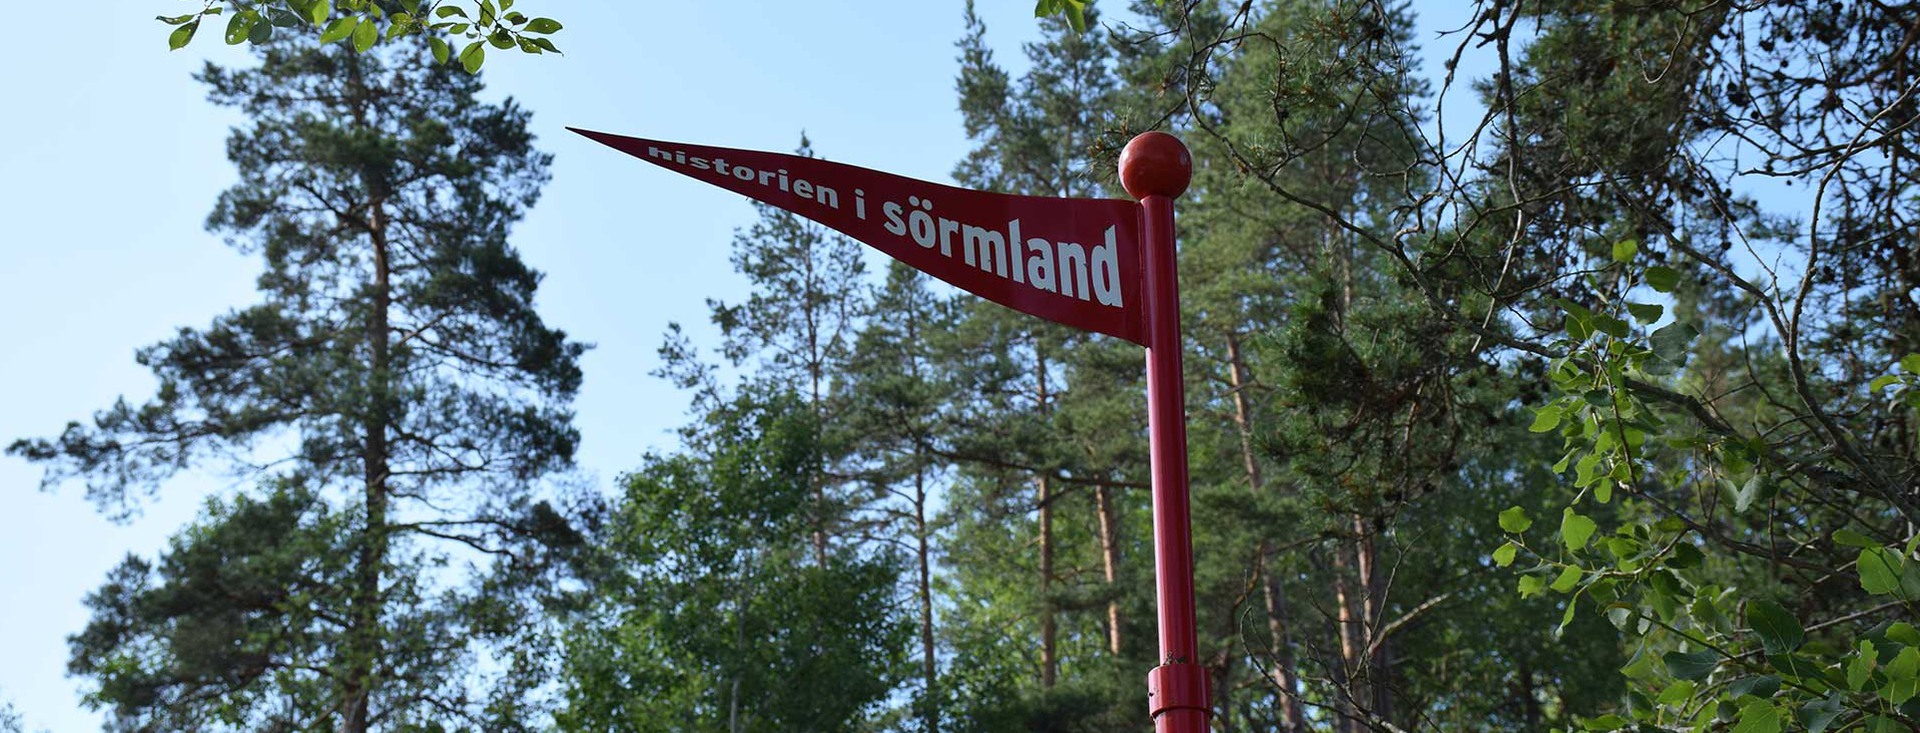 En röd metallflagga med texten "Historien i Sörmland"